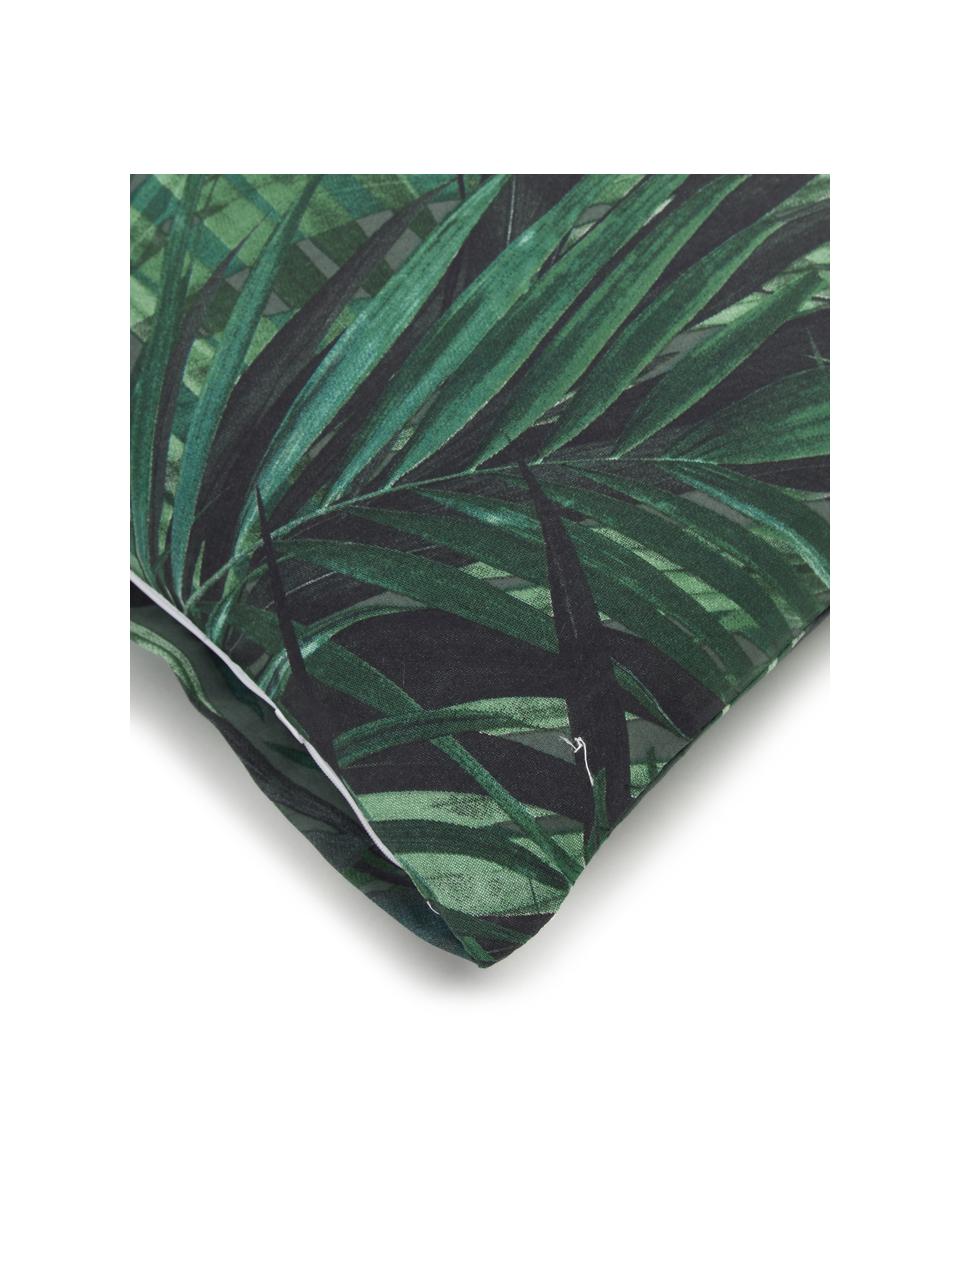 Baumwoll-Bettwäsche Solitude mit tropischem Print, Grün- und Blautöne, 135 x 200 cm + 1 Kissen 80 x 80 cm